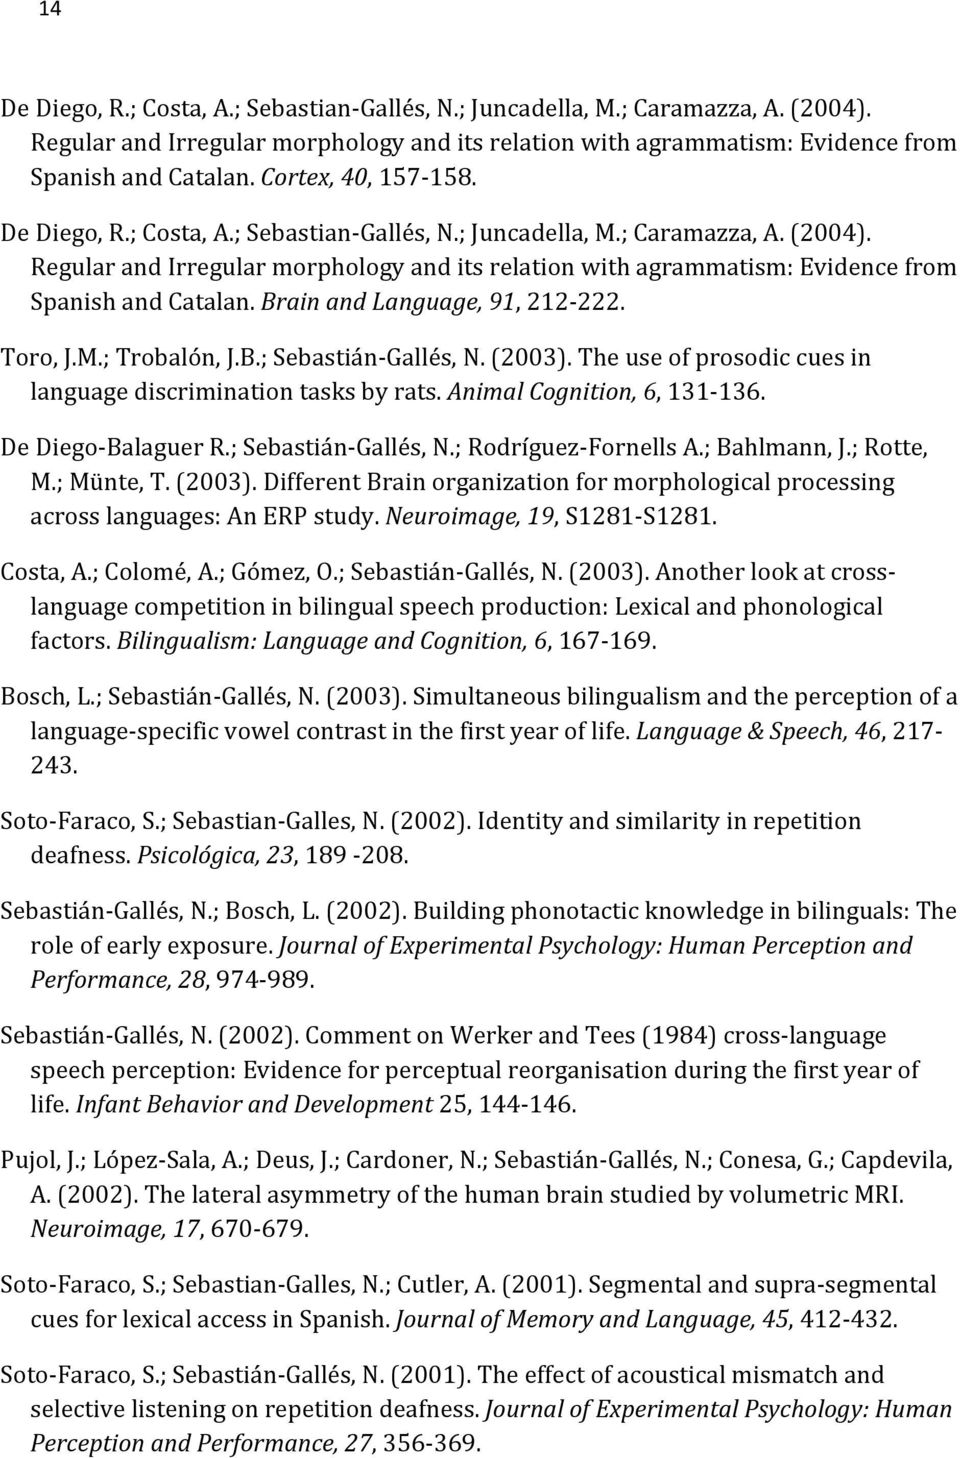 ;Bahlmann,J.;Rotte, M.;Münte,T.(2003).DifferentBrainorganizationformorphologicalprocessing acrosslanguages:anerpstudy.neuroimage,19,s1281ss1281. Costa,A.;Colomé,A.;Gómez,O.;SebastiánSGallés,N.(2003).AnotherlookatcrossS languagecompetitioninbilingualspeechproduction:lexicalandphonological factors.